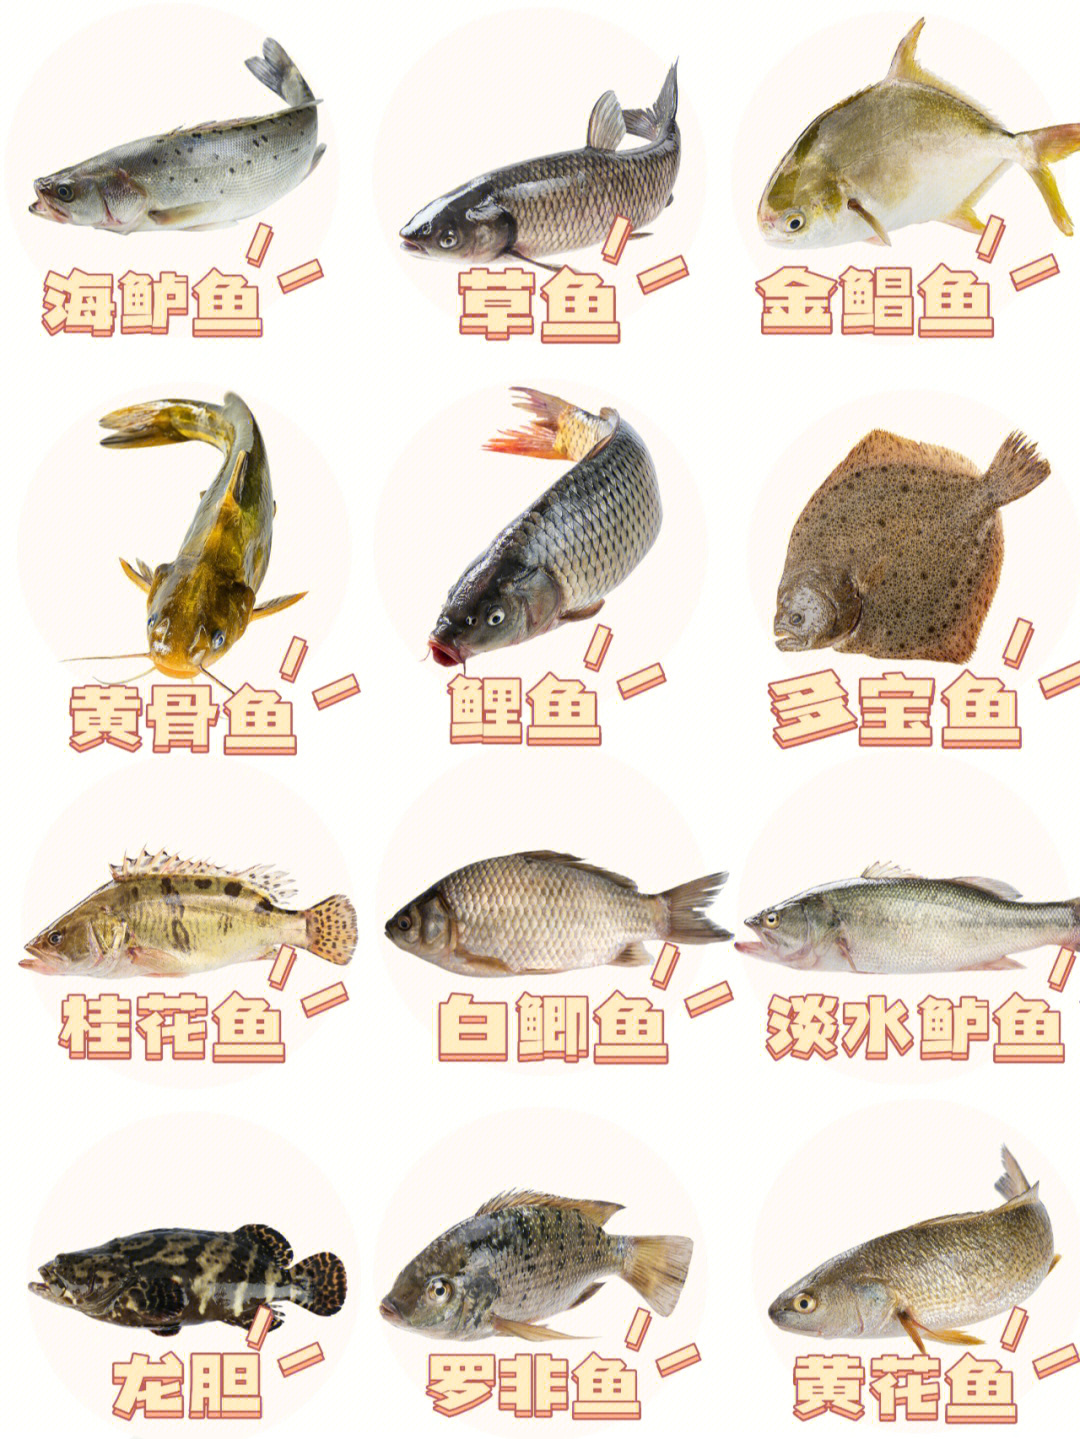 食用鱼的种类图片